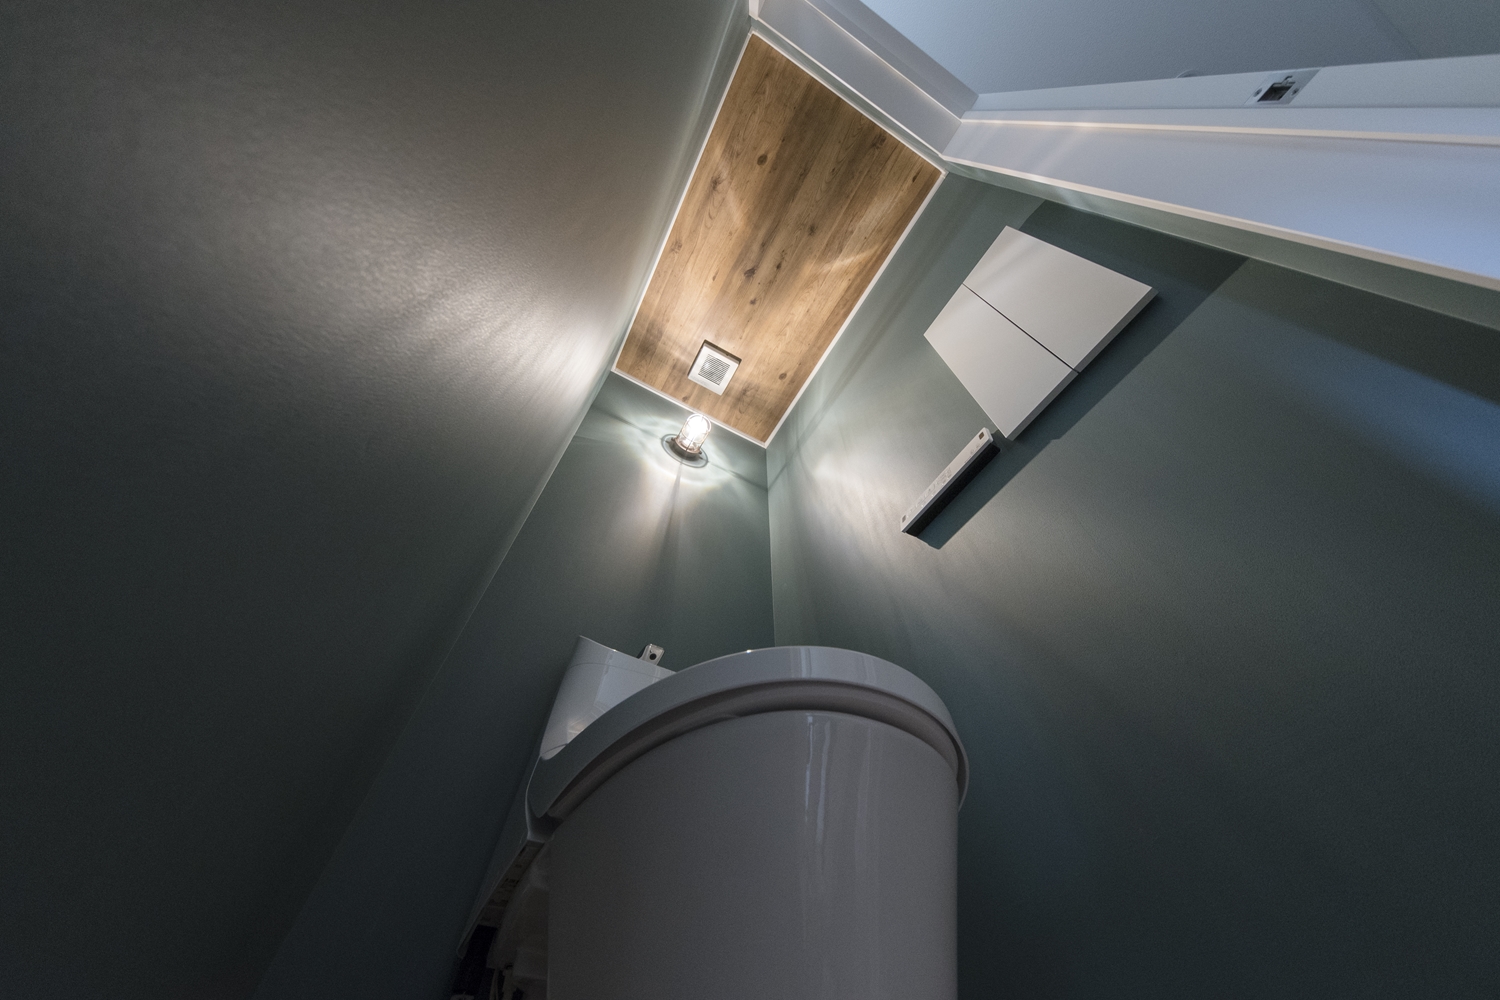 2階トイレ/モスグリーンの壁に木目模様の天井、インダストリアルデザインの照明が個性的な空間を演出。